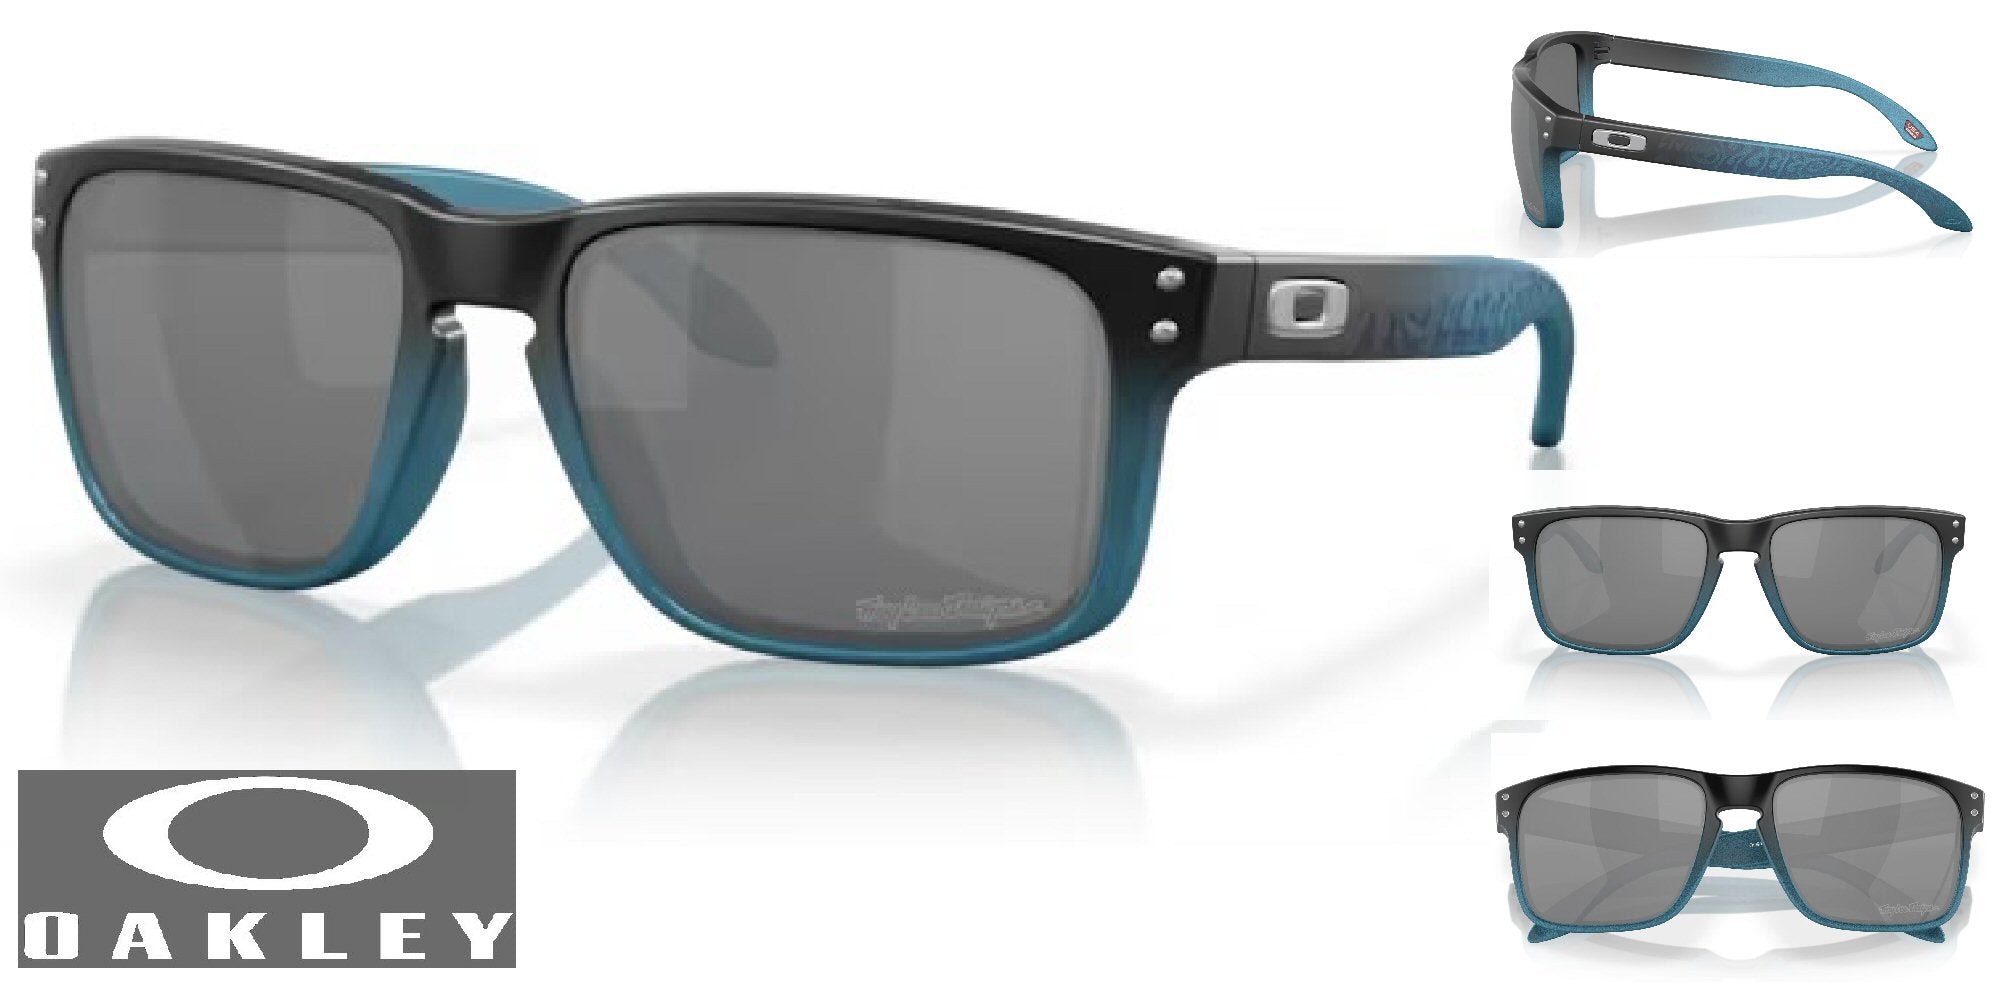 Oakley Holbrook Troy Lee Designs Sunglasses - Blue Fade Frame/Prizm Black Lenses